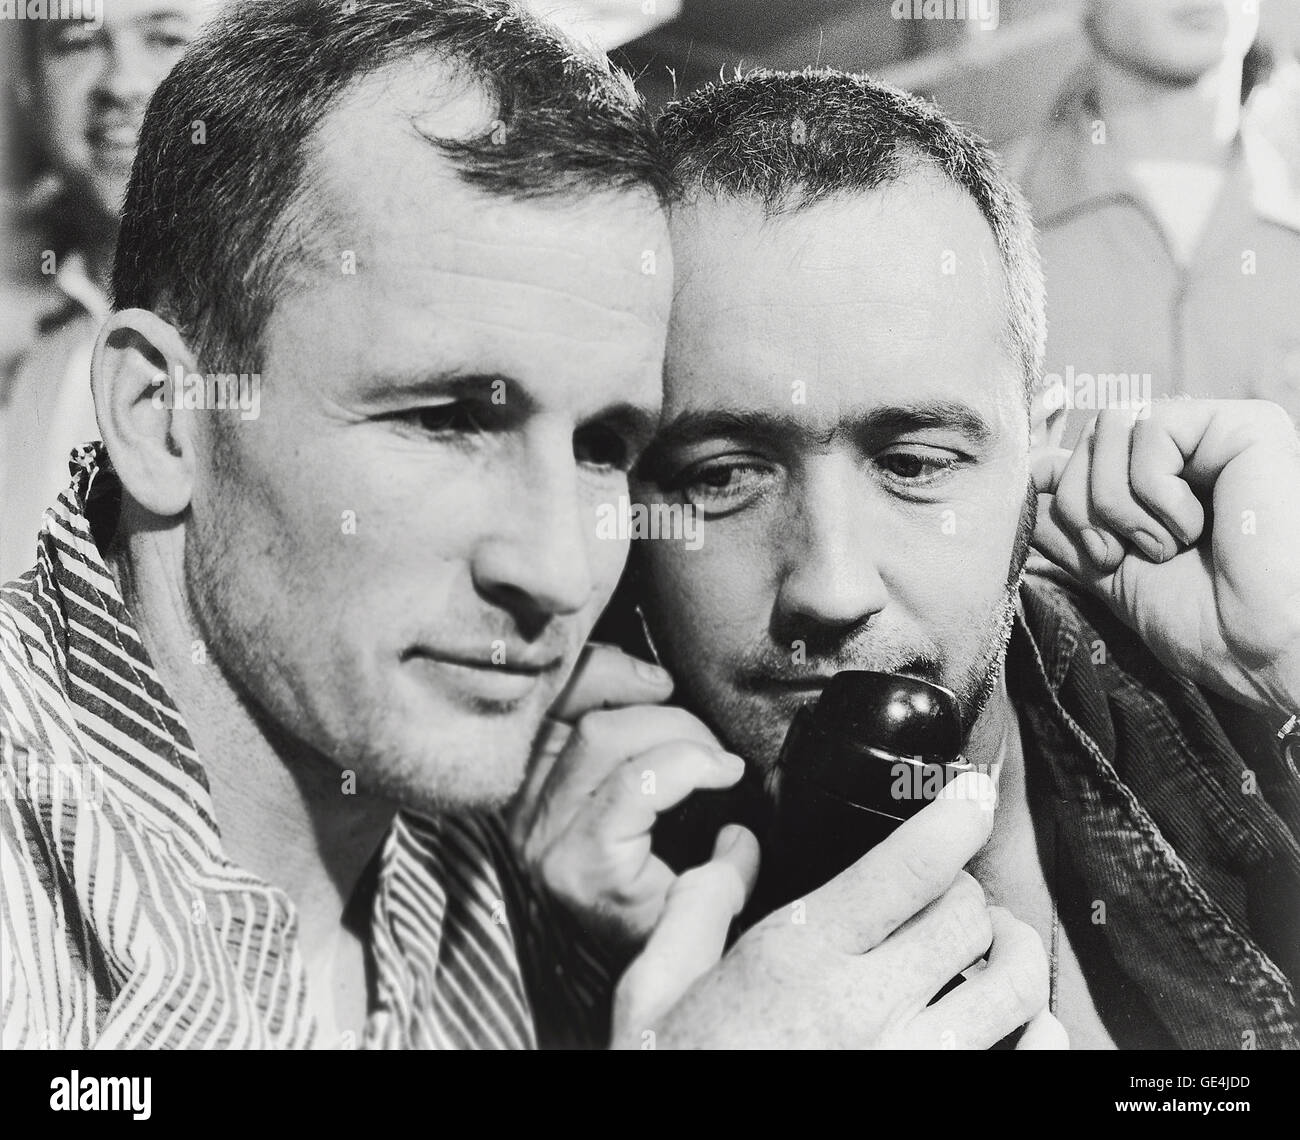 (7 giugno 1965) Gemini 4 astronauti Edward H. White II (sinistra) e James McDivitt A. ascoltare la voce del Presidente Lyndon B. Johnson come egli si è congratulato con loro per telefono sulla riuscita della missione. Essi sono mostrati a bordo della portaerei Museo della Portaerei U.S.S. Wasp appena dopo la loro splashdown recupero dall'Oceano Atlantico. Immagine # : S65-33533 Foto Stock